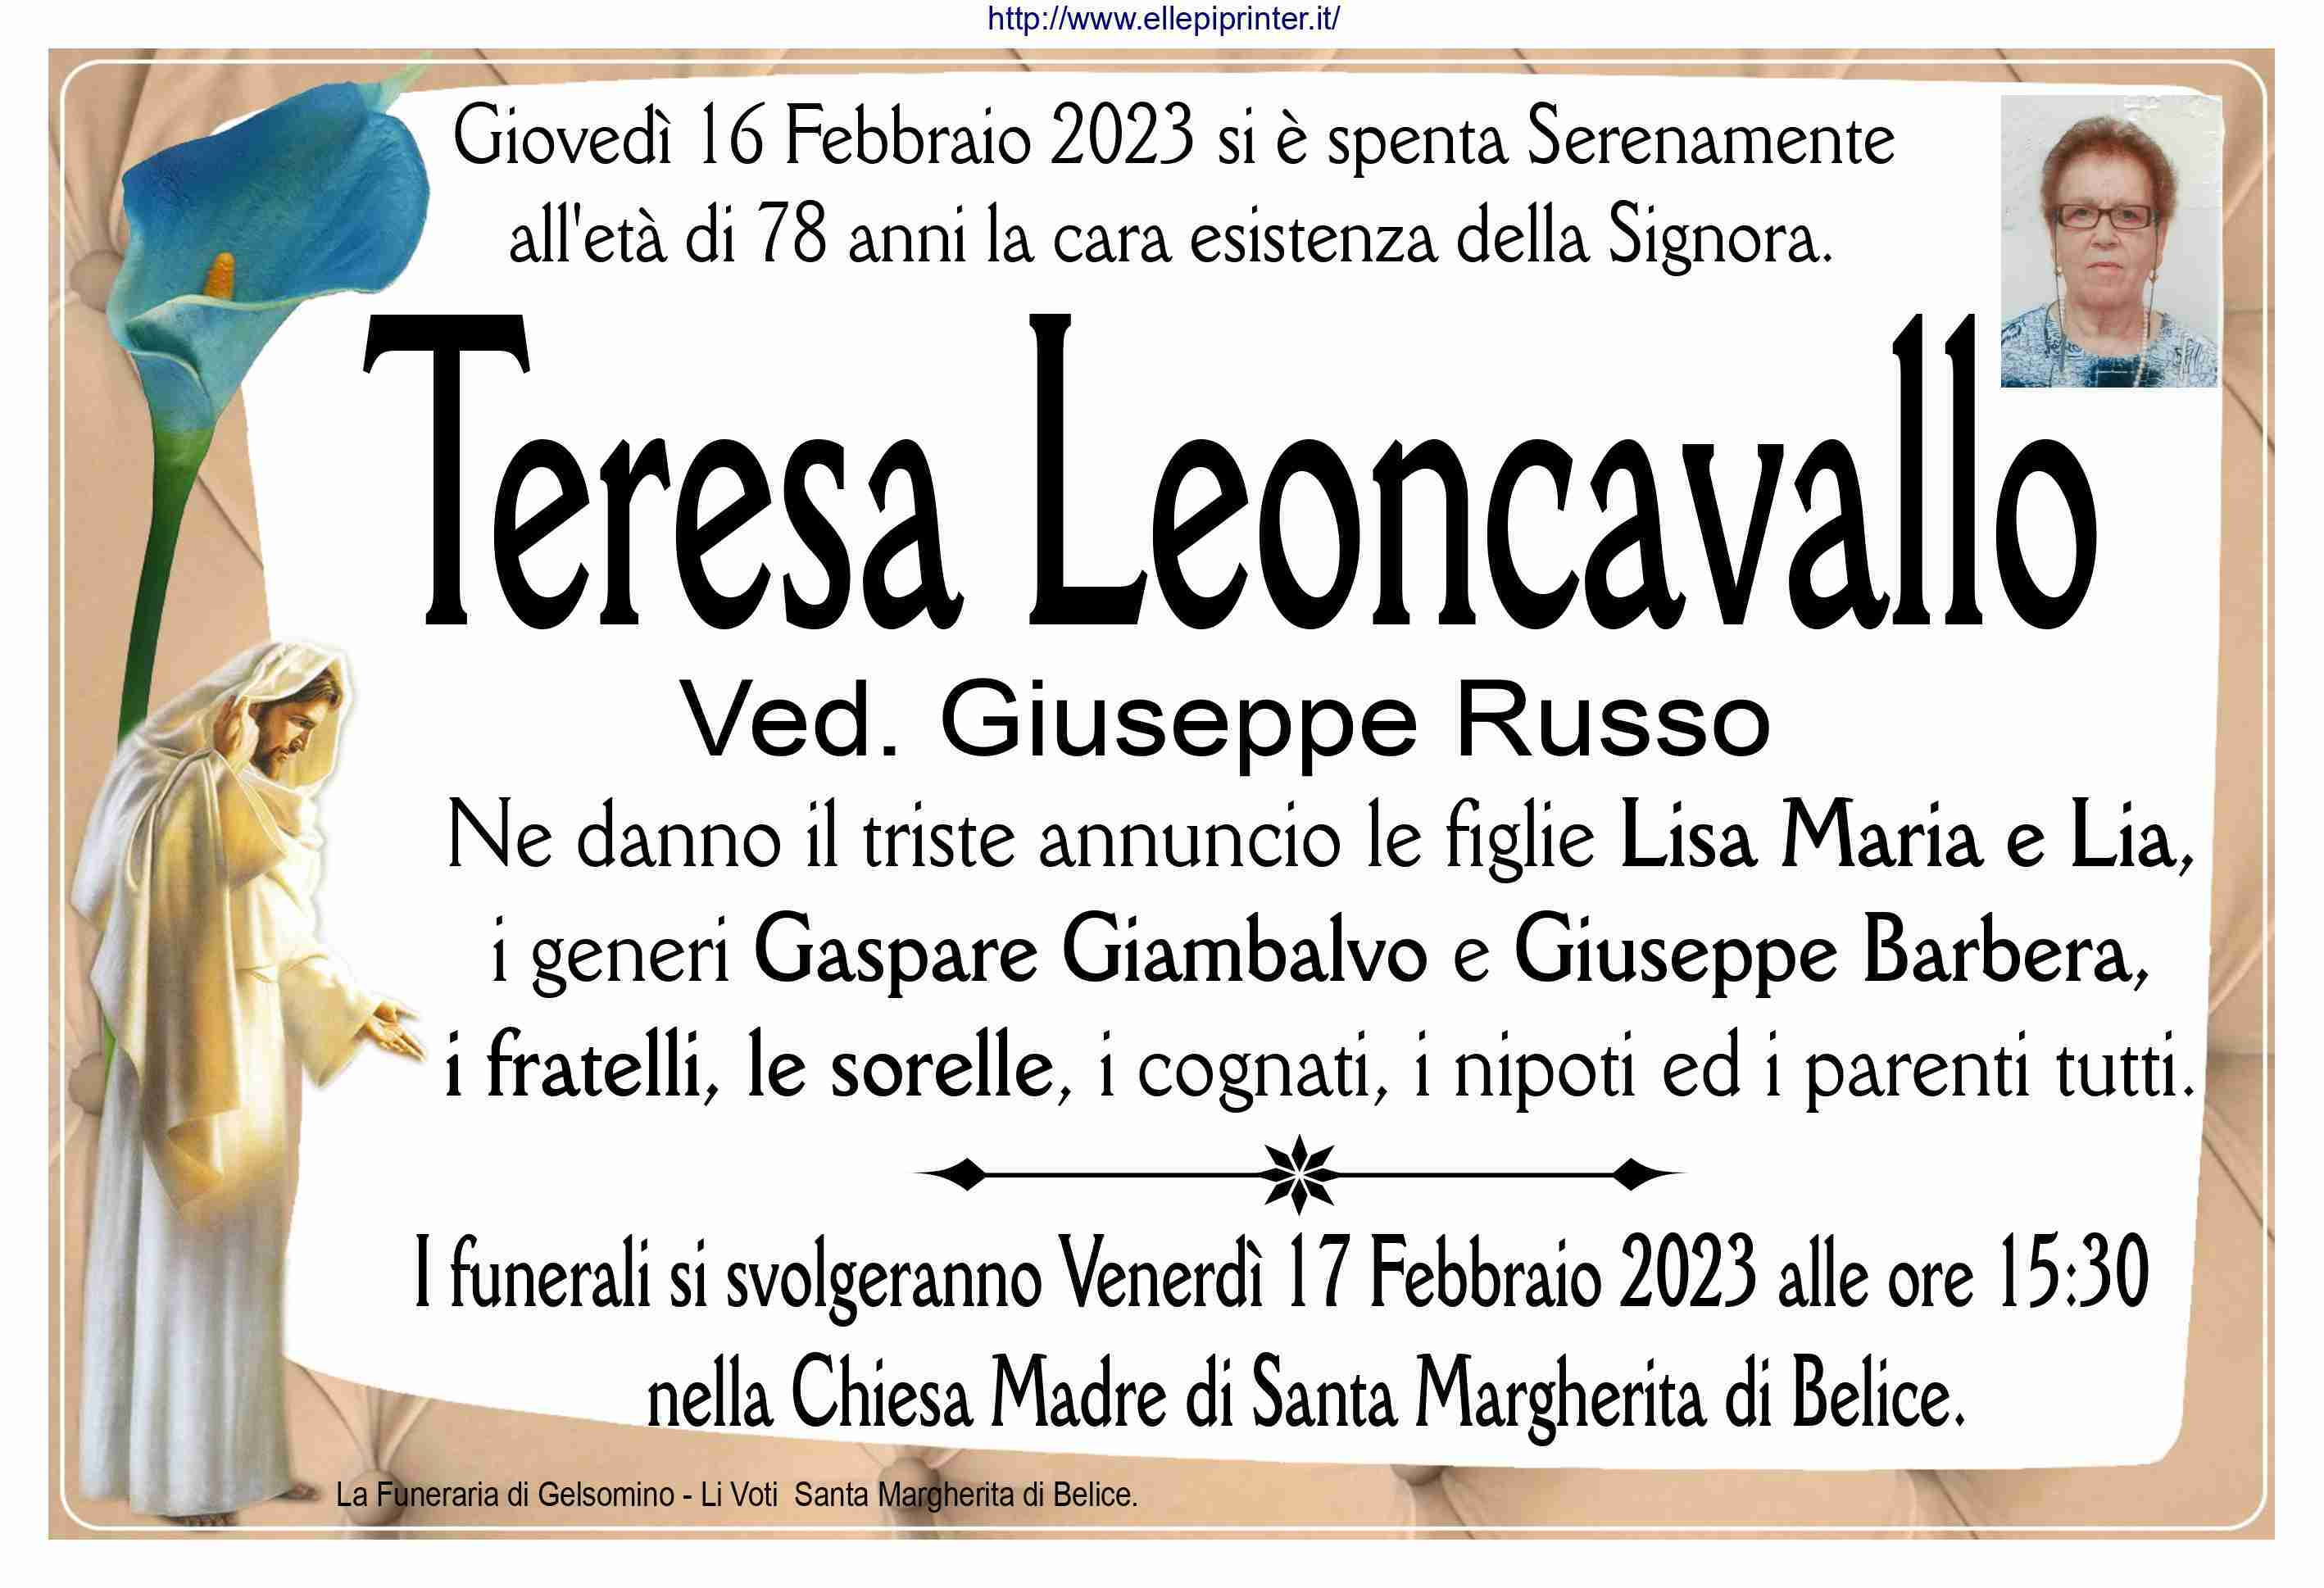 Teresa Leoncavallo